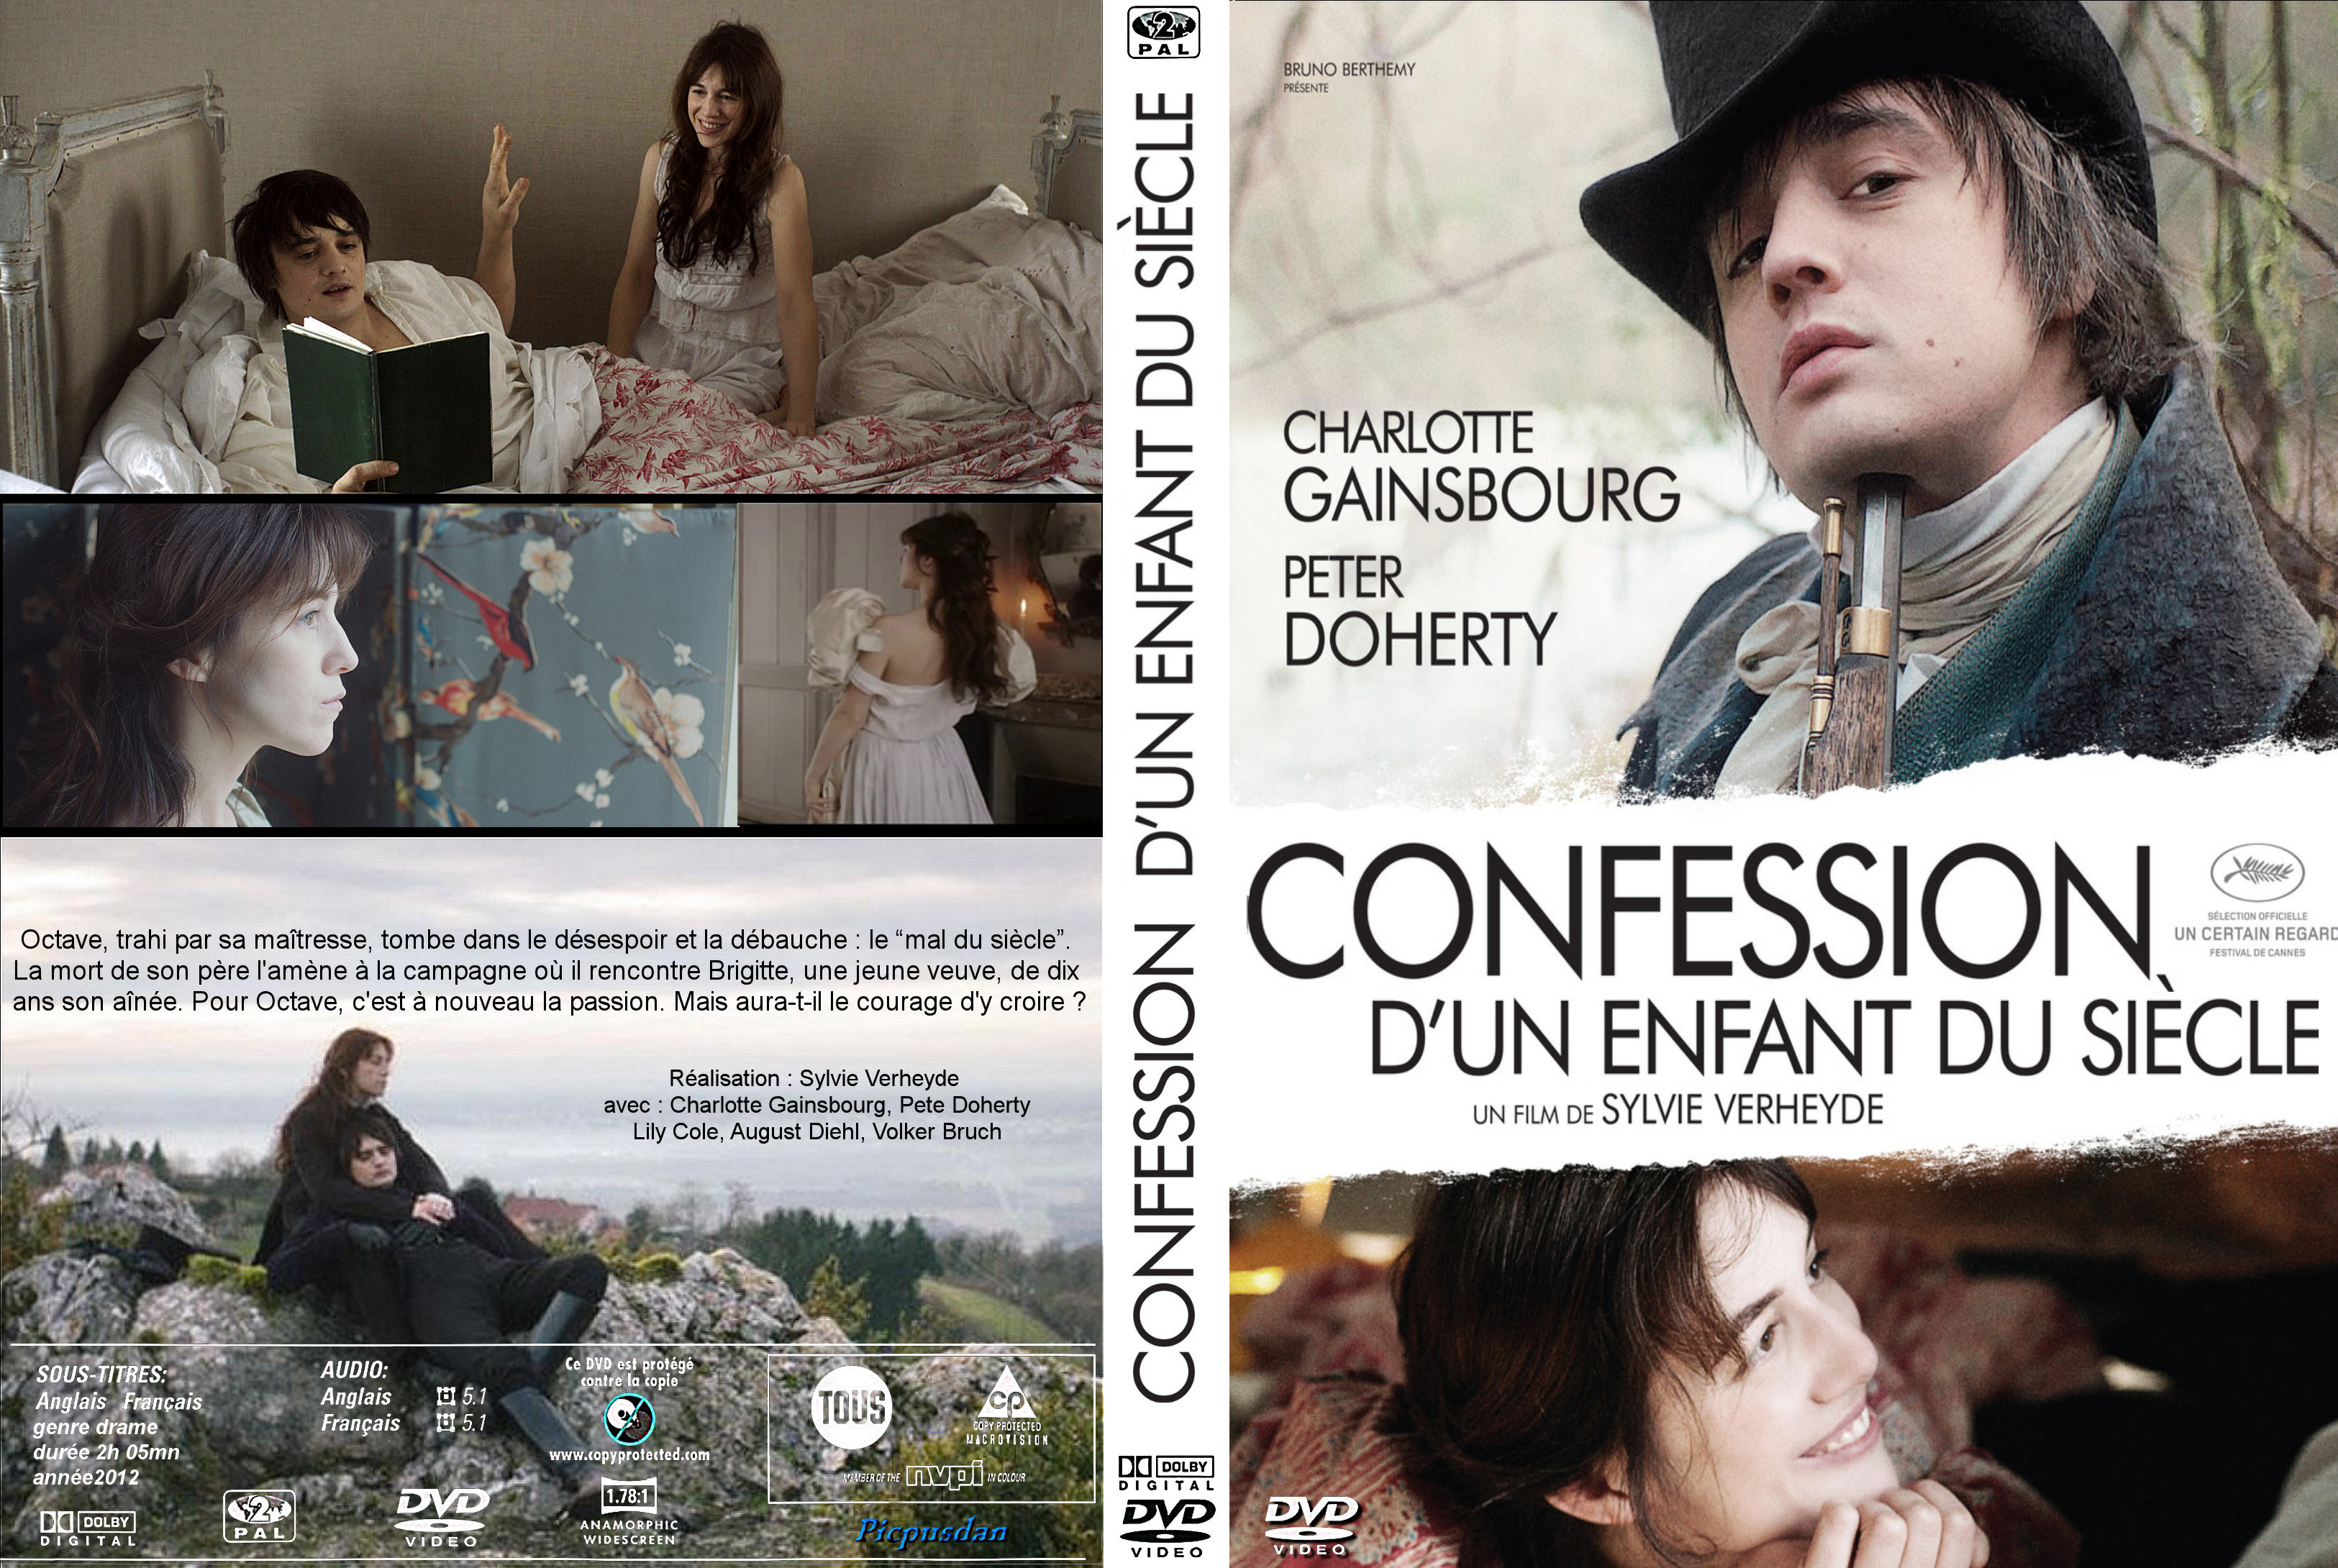 Jaquette DVD Confession d